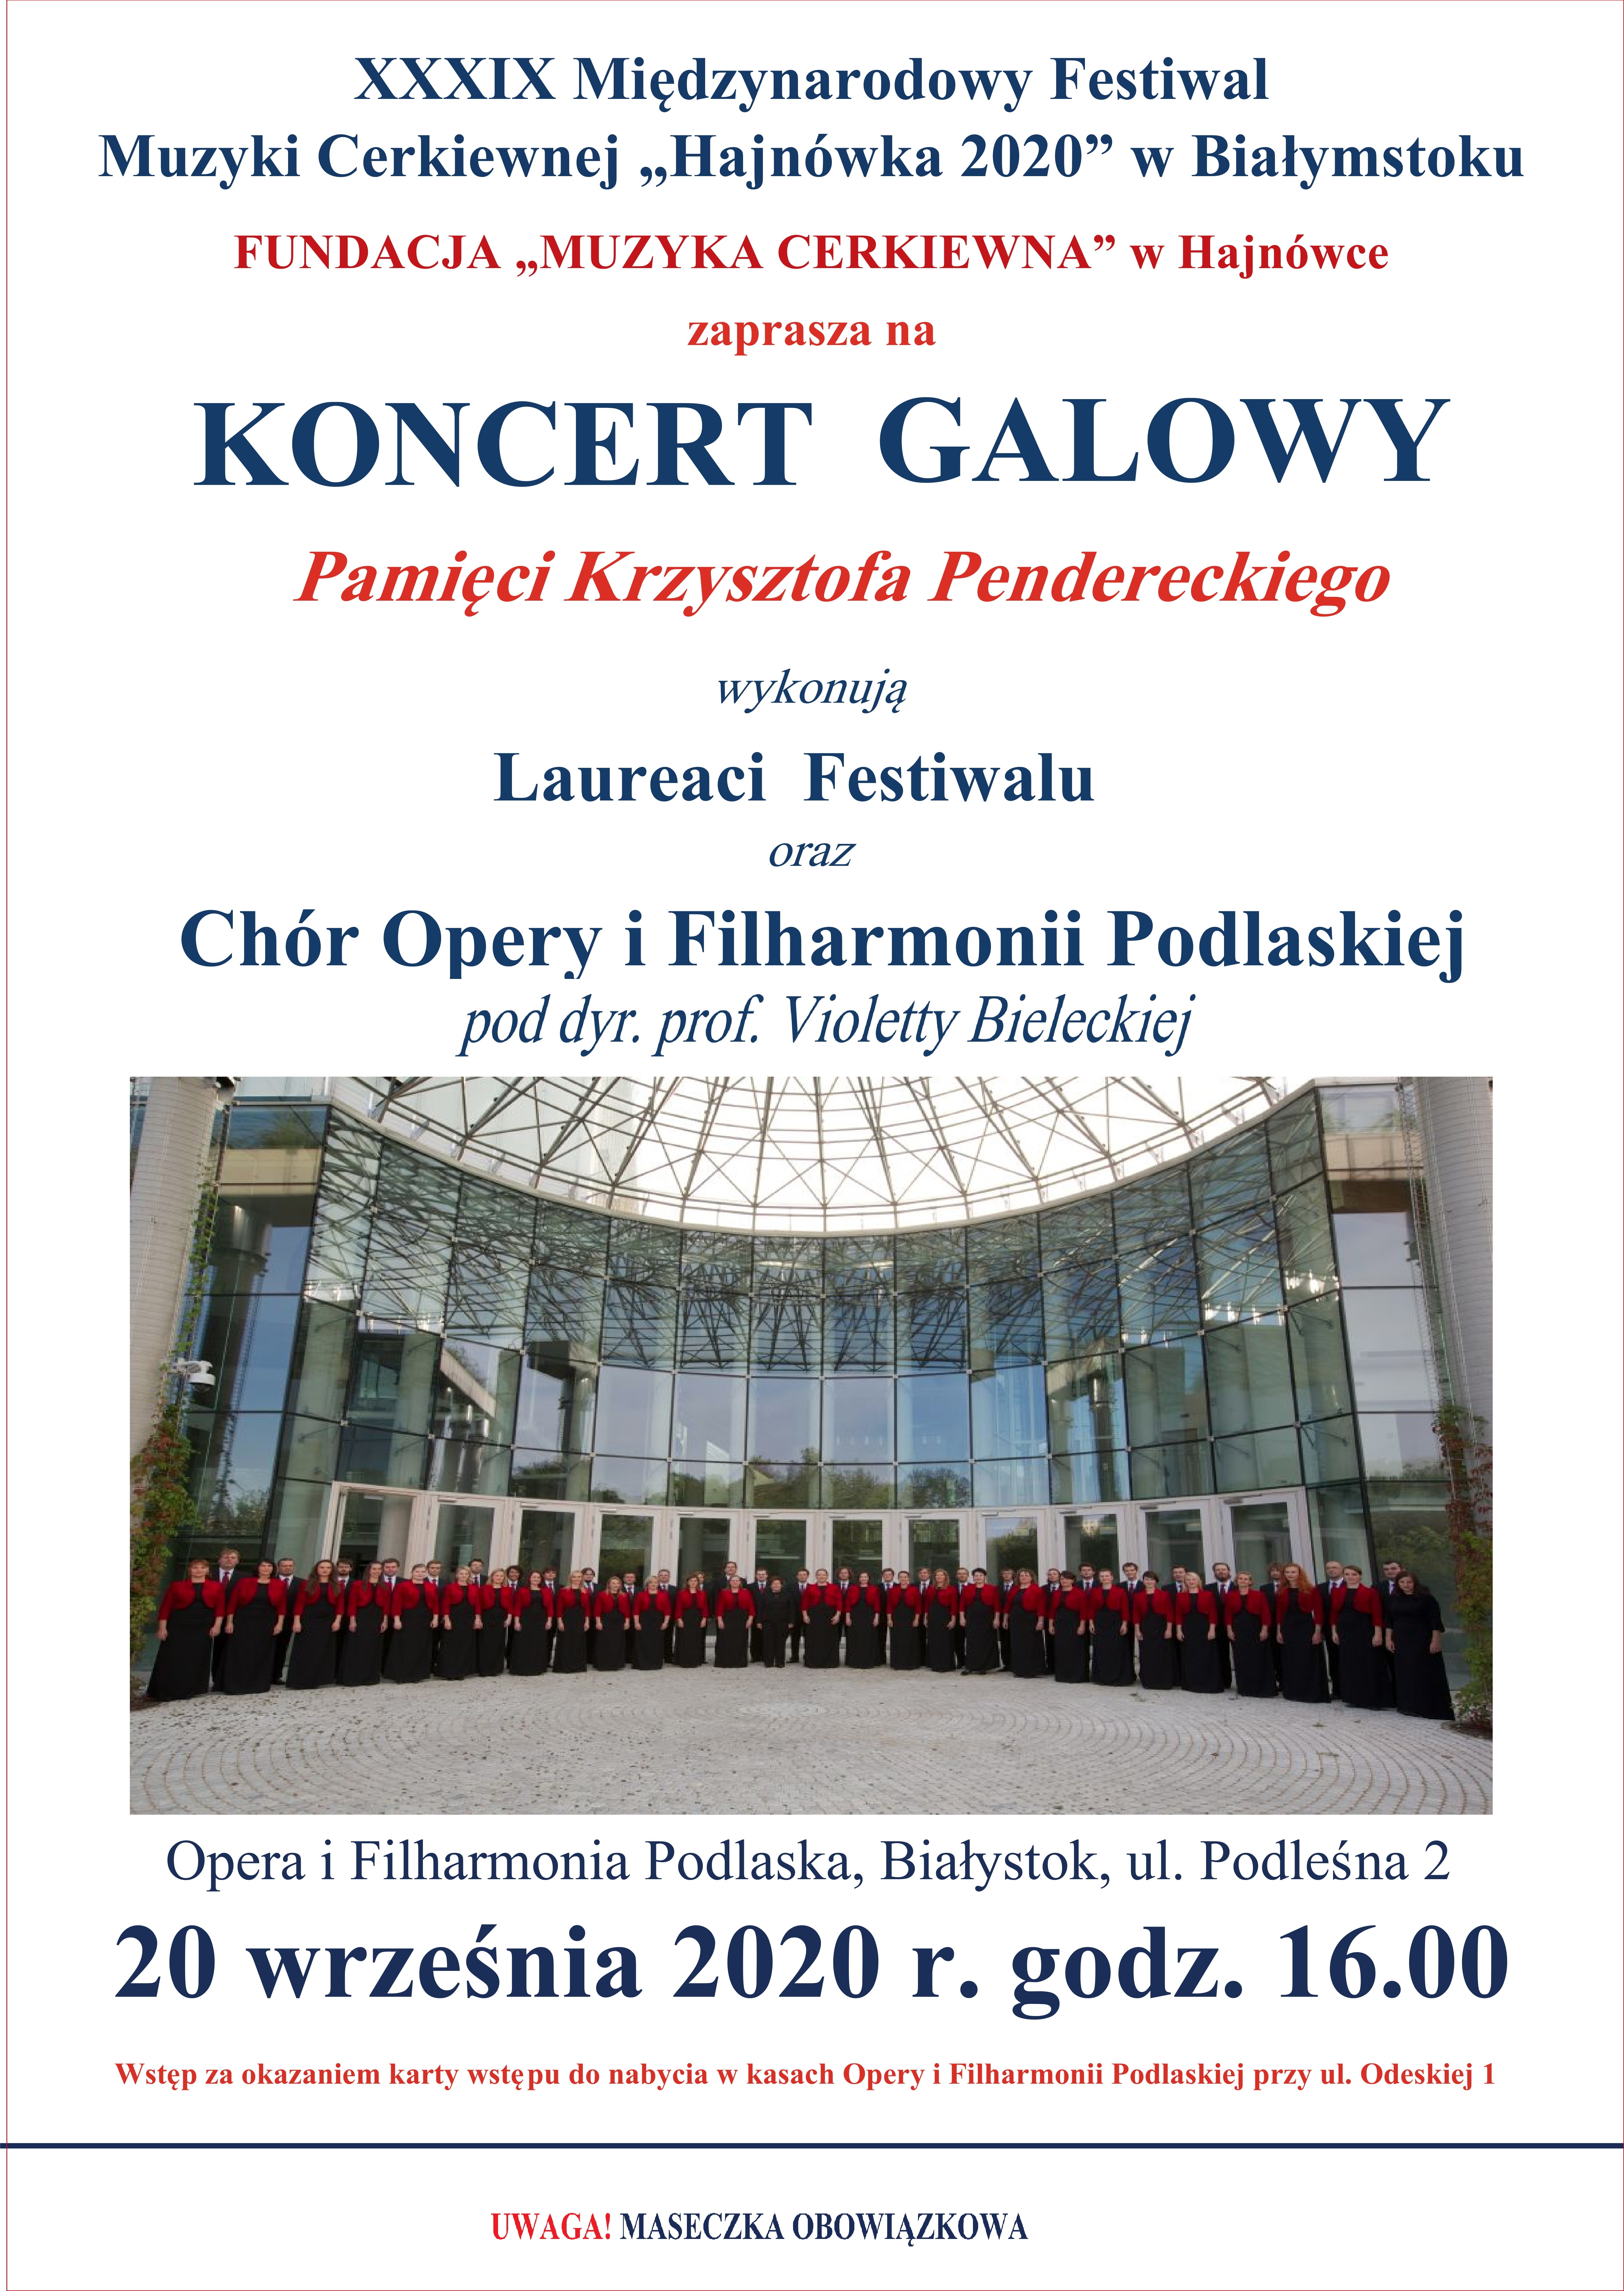 Plakat informujący o Międzynarodowym Festiwalu Muzyki Cerkiewnej „Hajnówka” w Białymstoku.